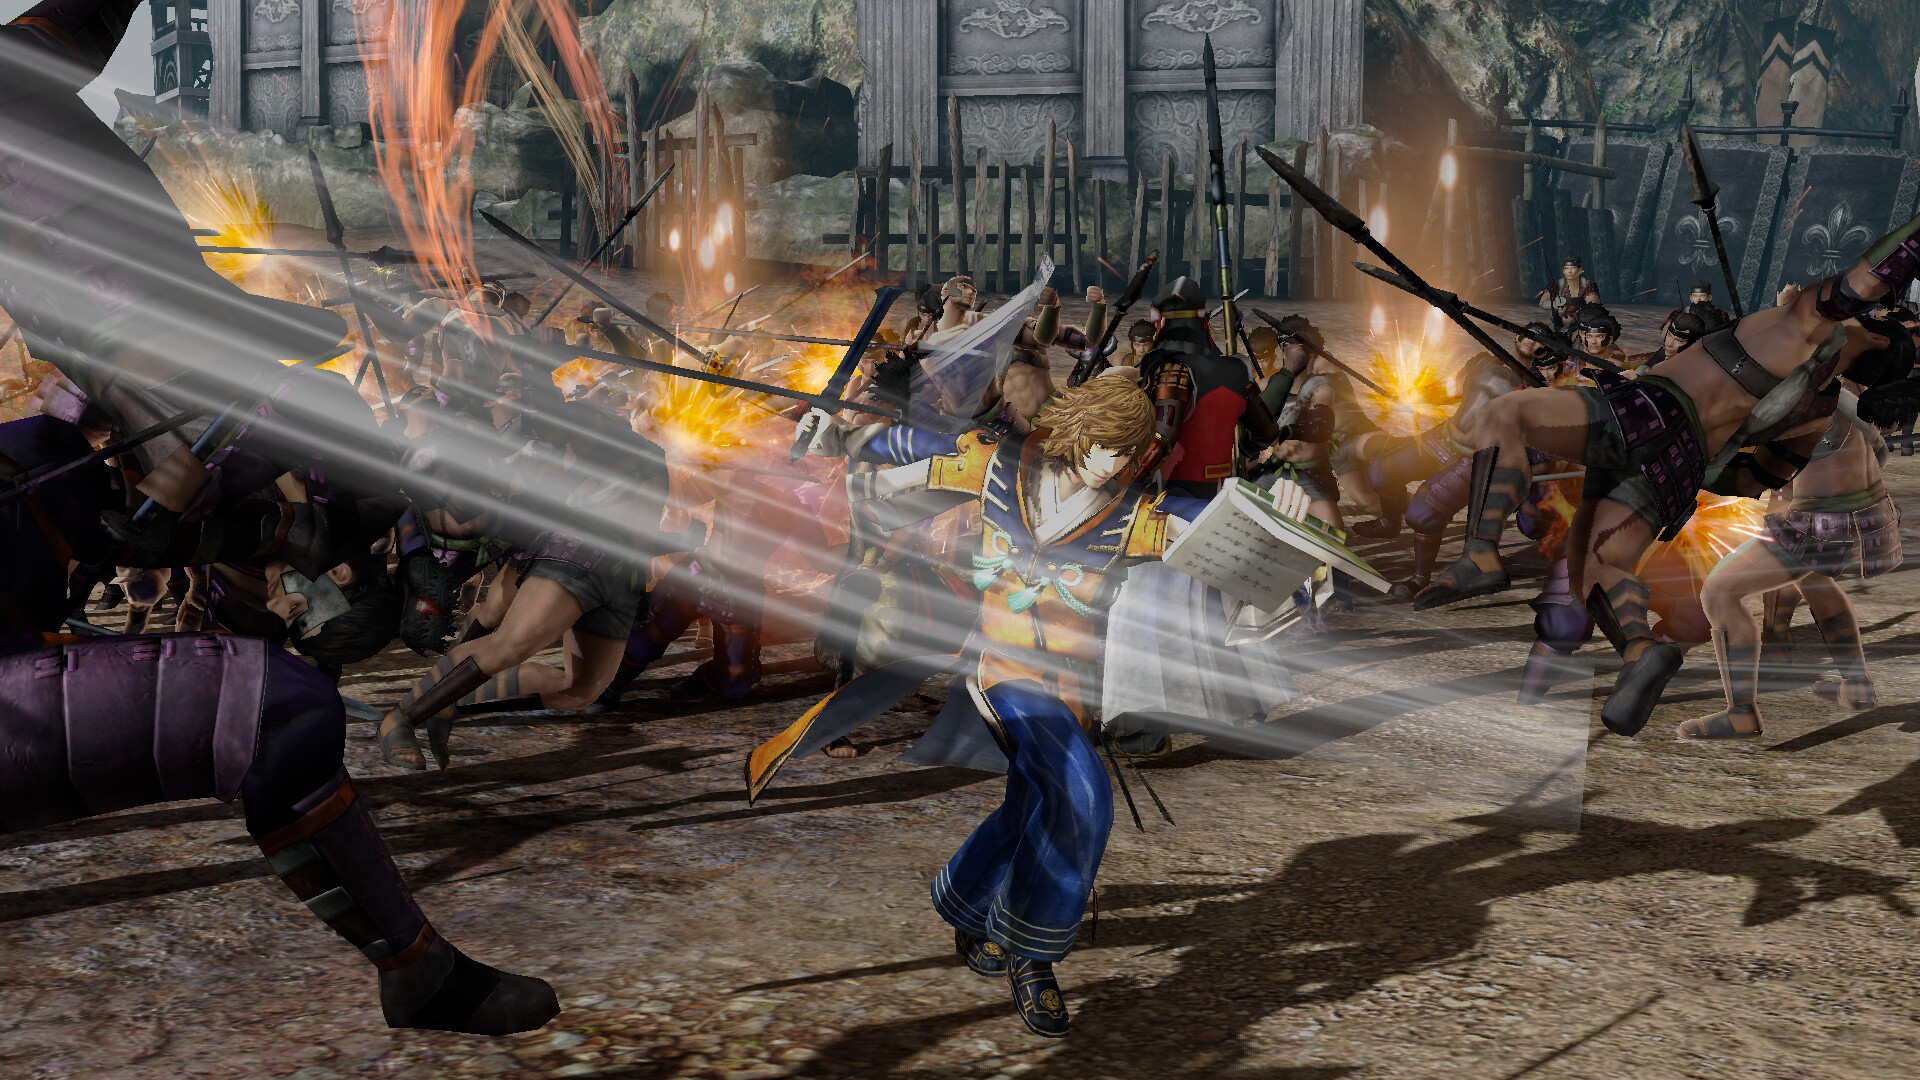 A screenshot from Samurai Warriors 4 DX